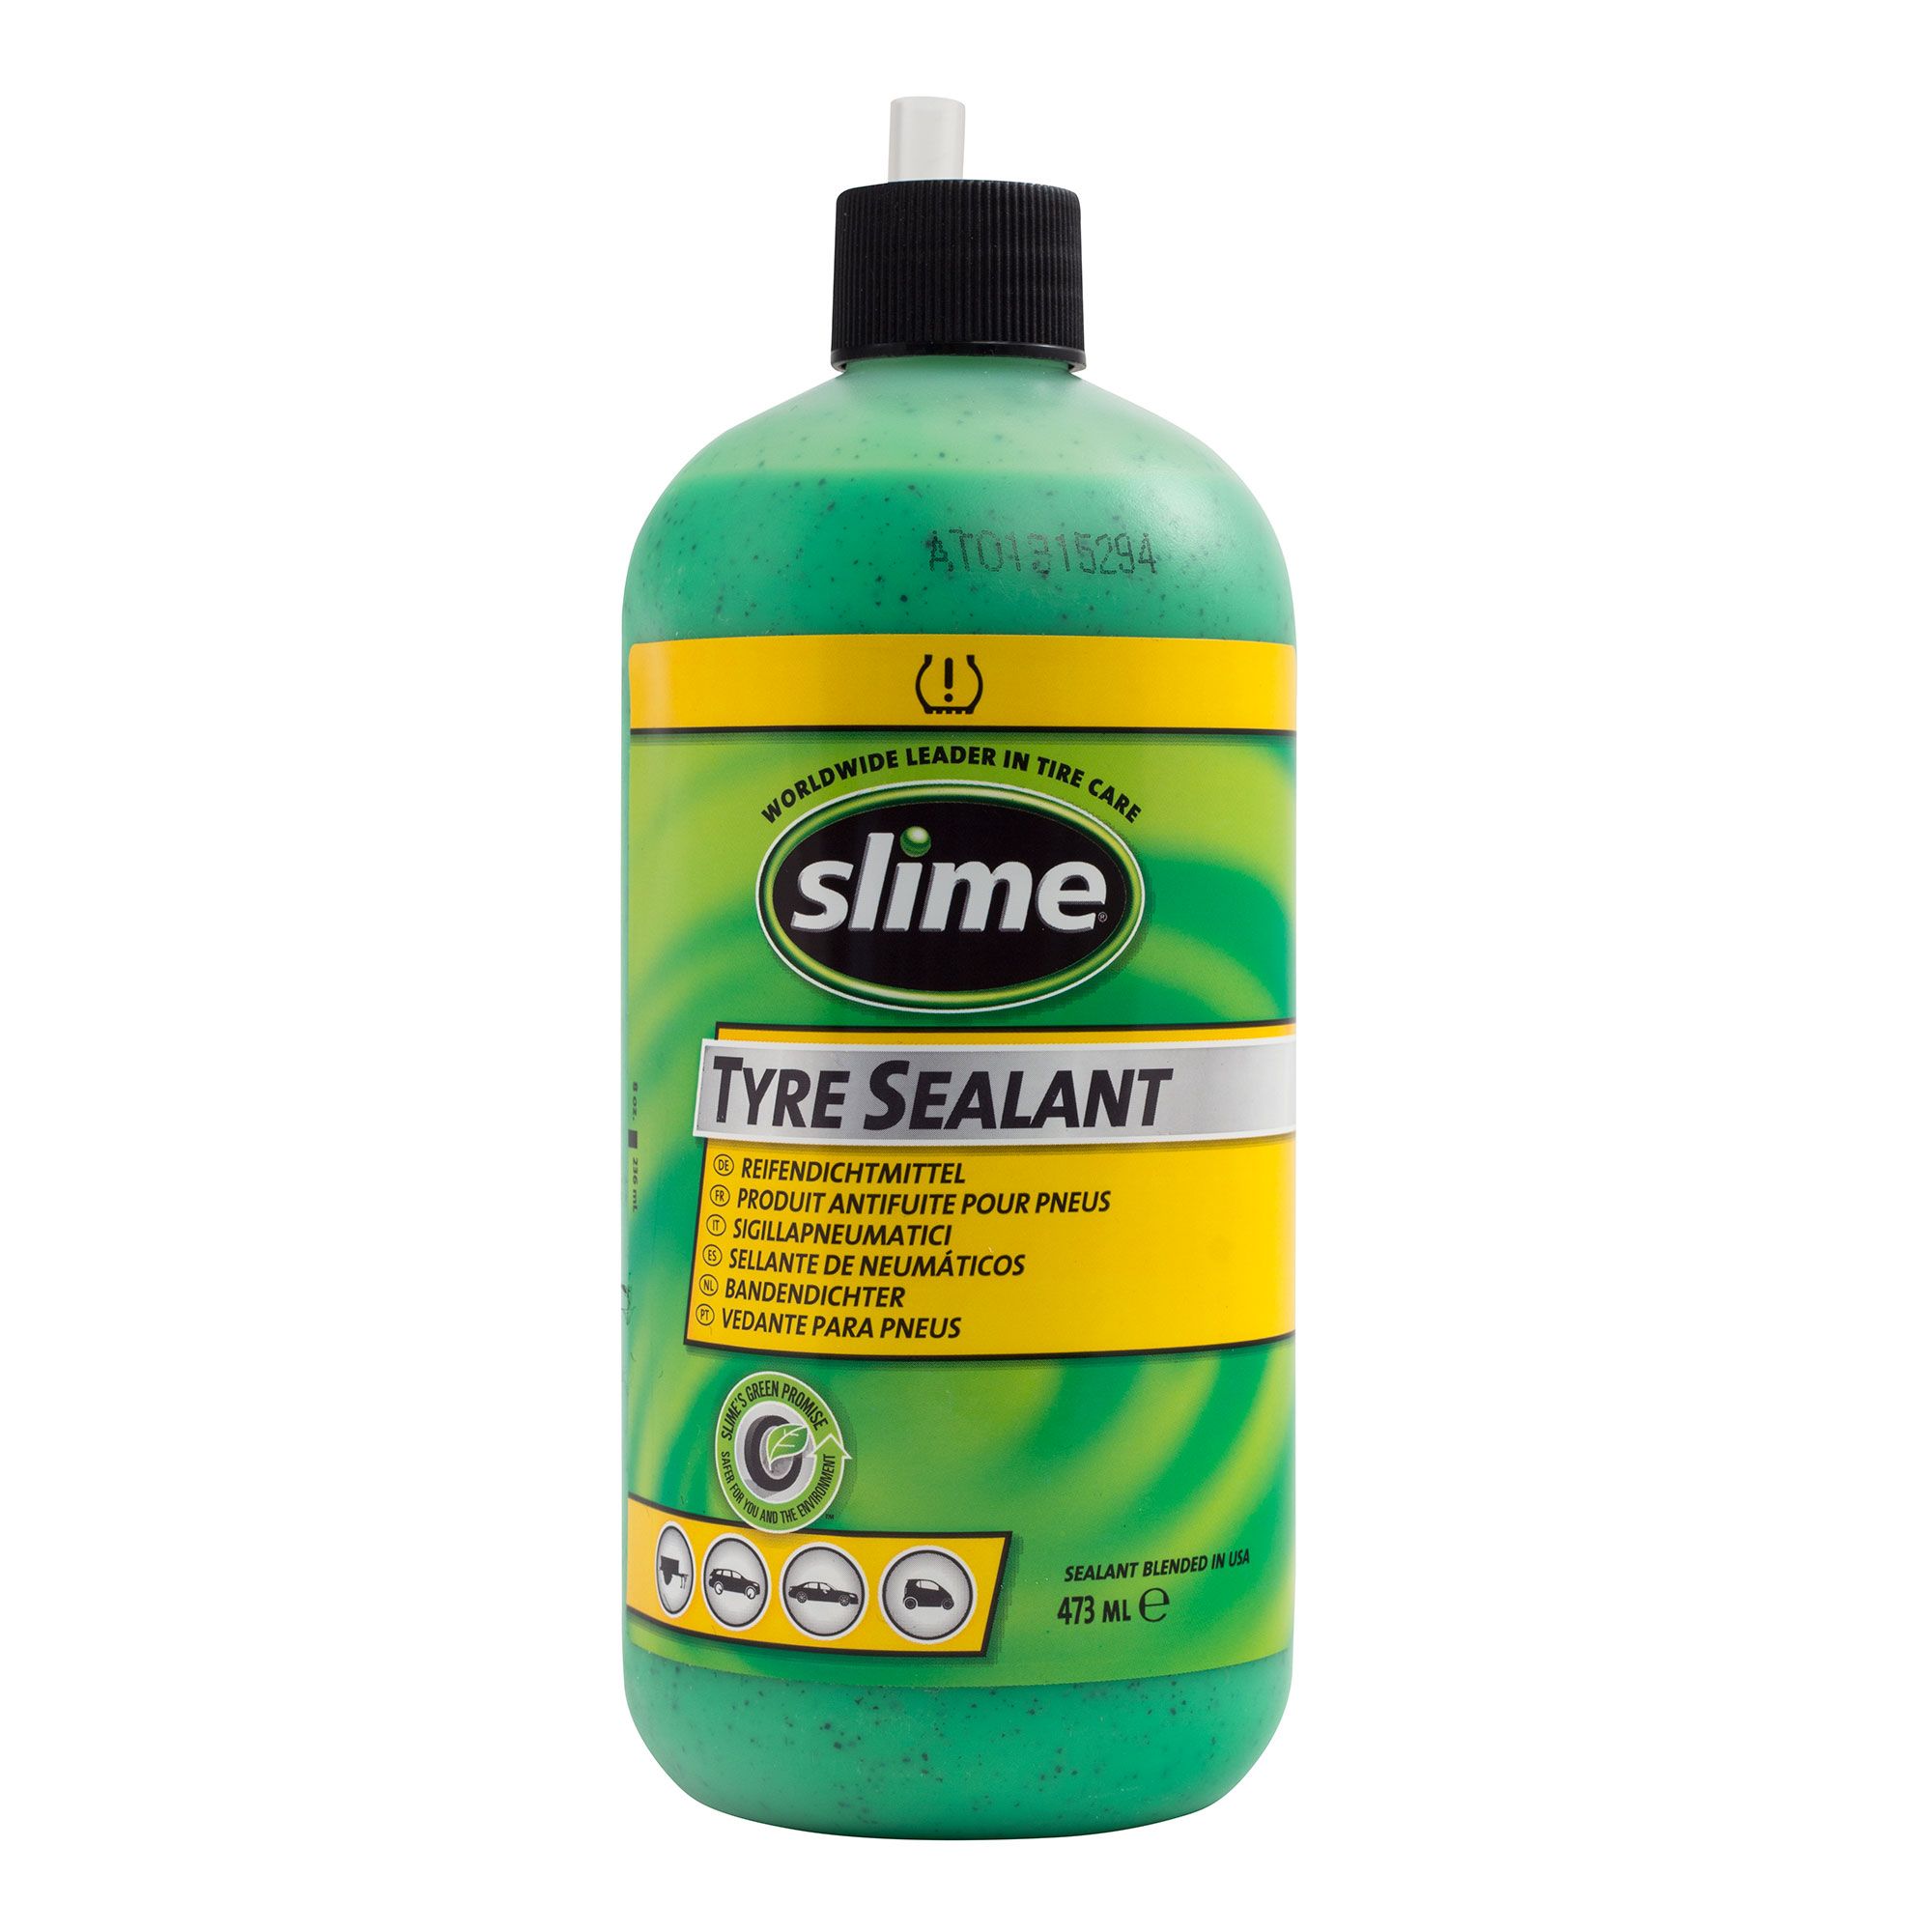 Slime Smart Repuesto En La Carretera Neumático Kit De Reparación De Pinchazosbomba Infladoratratamiento Inc Ebay